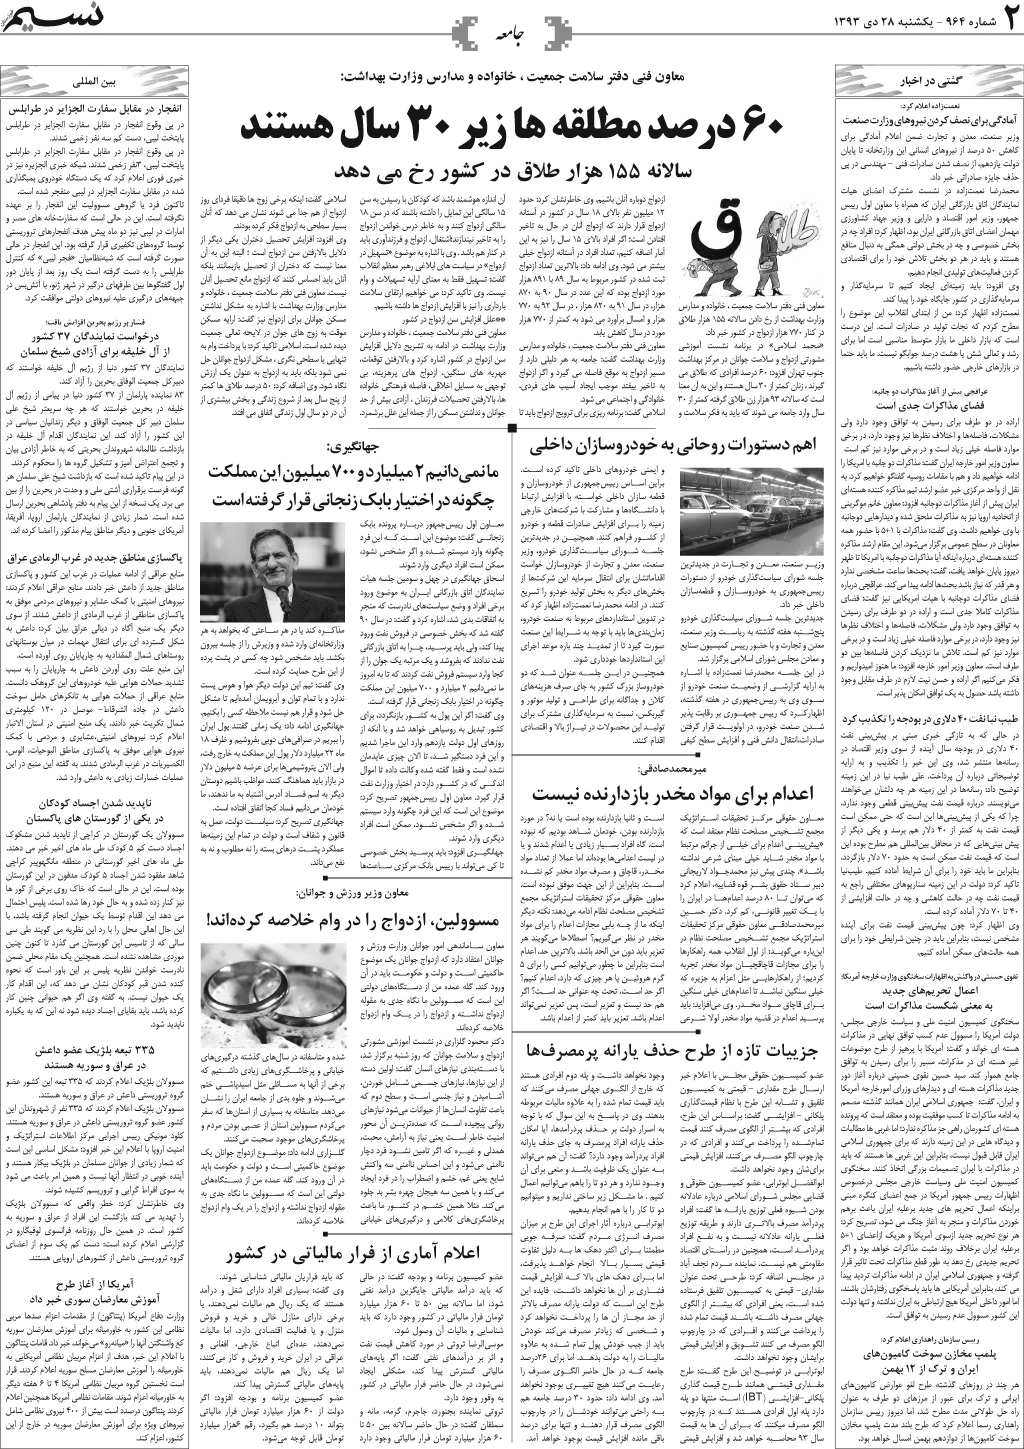 صفحه جامعه روزنامه نسیم شماره 964